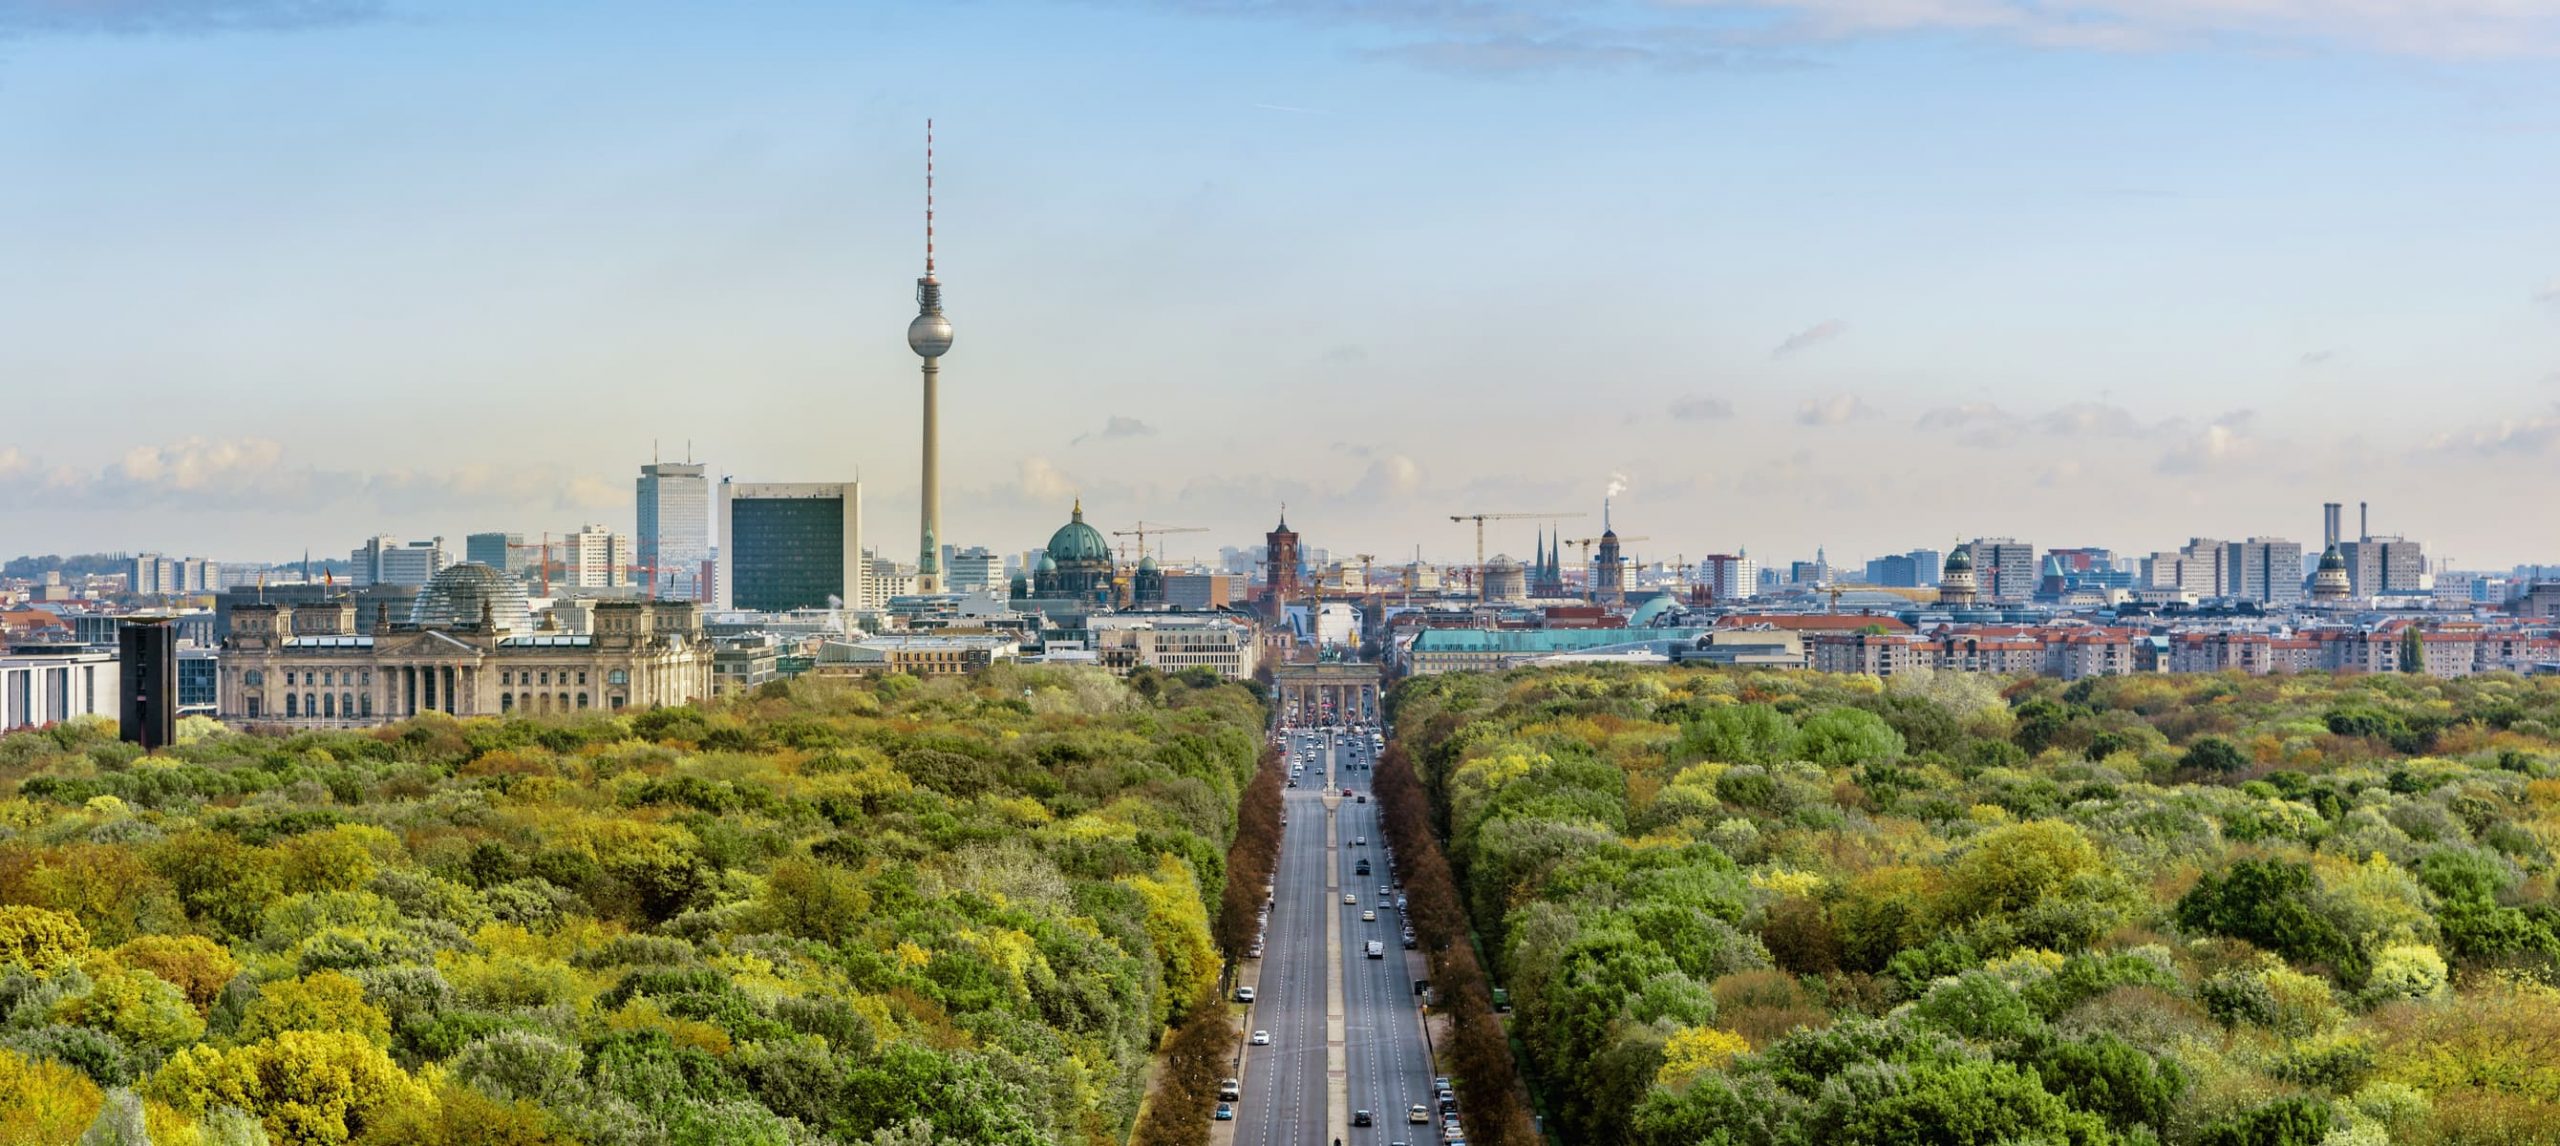 Aerial view of Berlin's center from Tiergarten